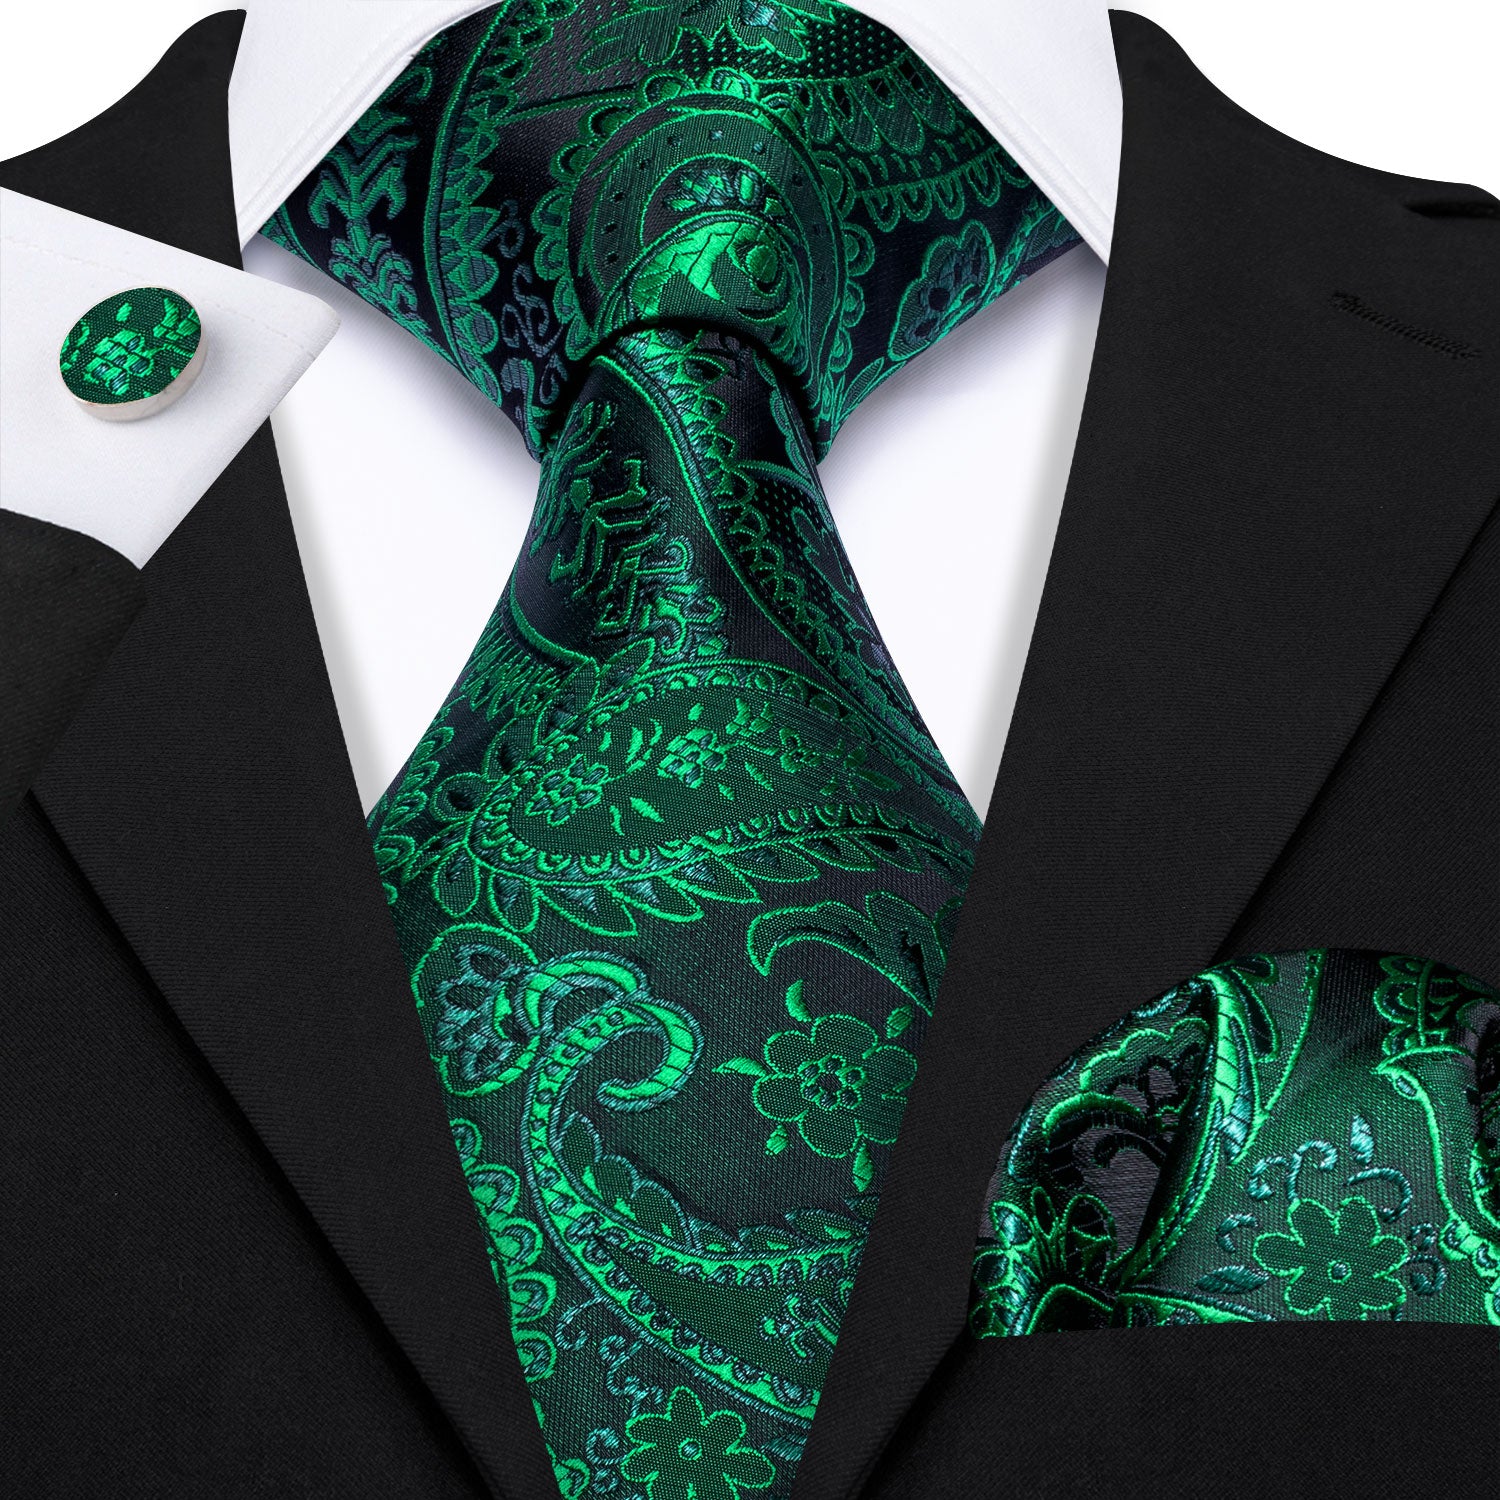 Barry Wang Green Tie Paisley Necktie Handkerchief Cufflinks Set